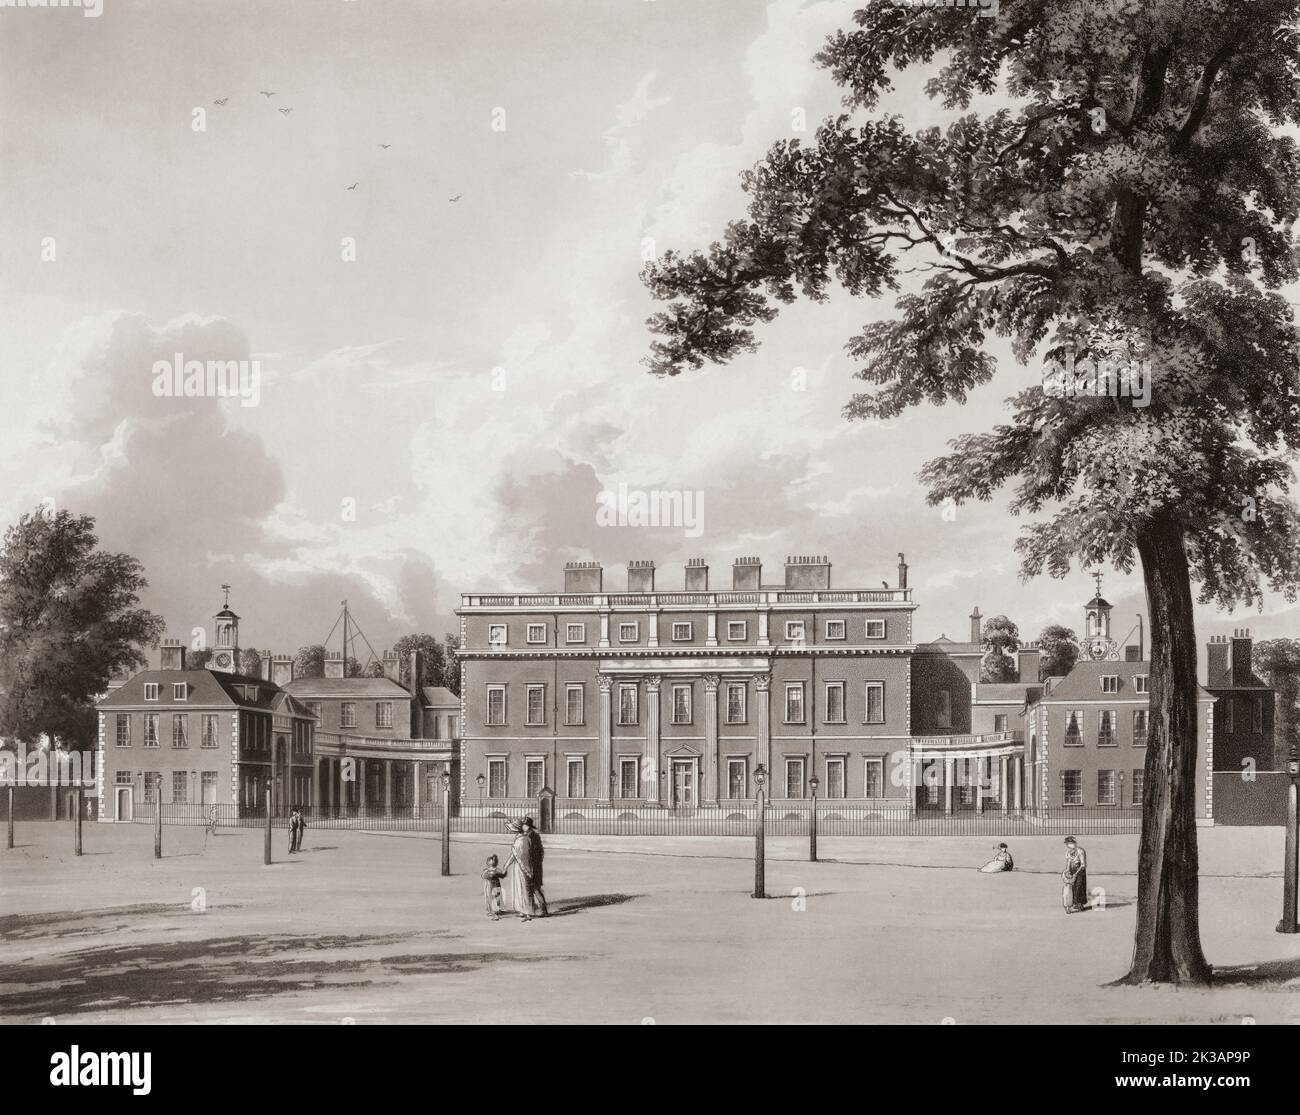 St James's Park, Buckingham Palace, London, England, afterThomas Sutherland, 1810 Stock Photo